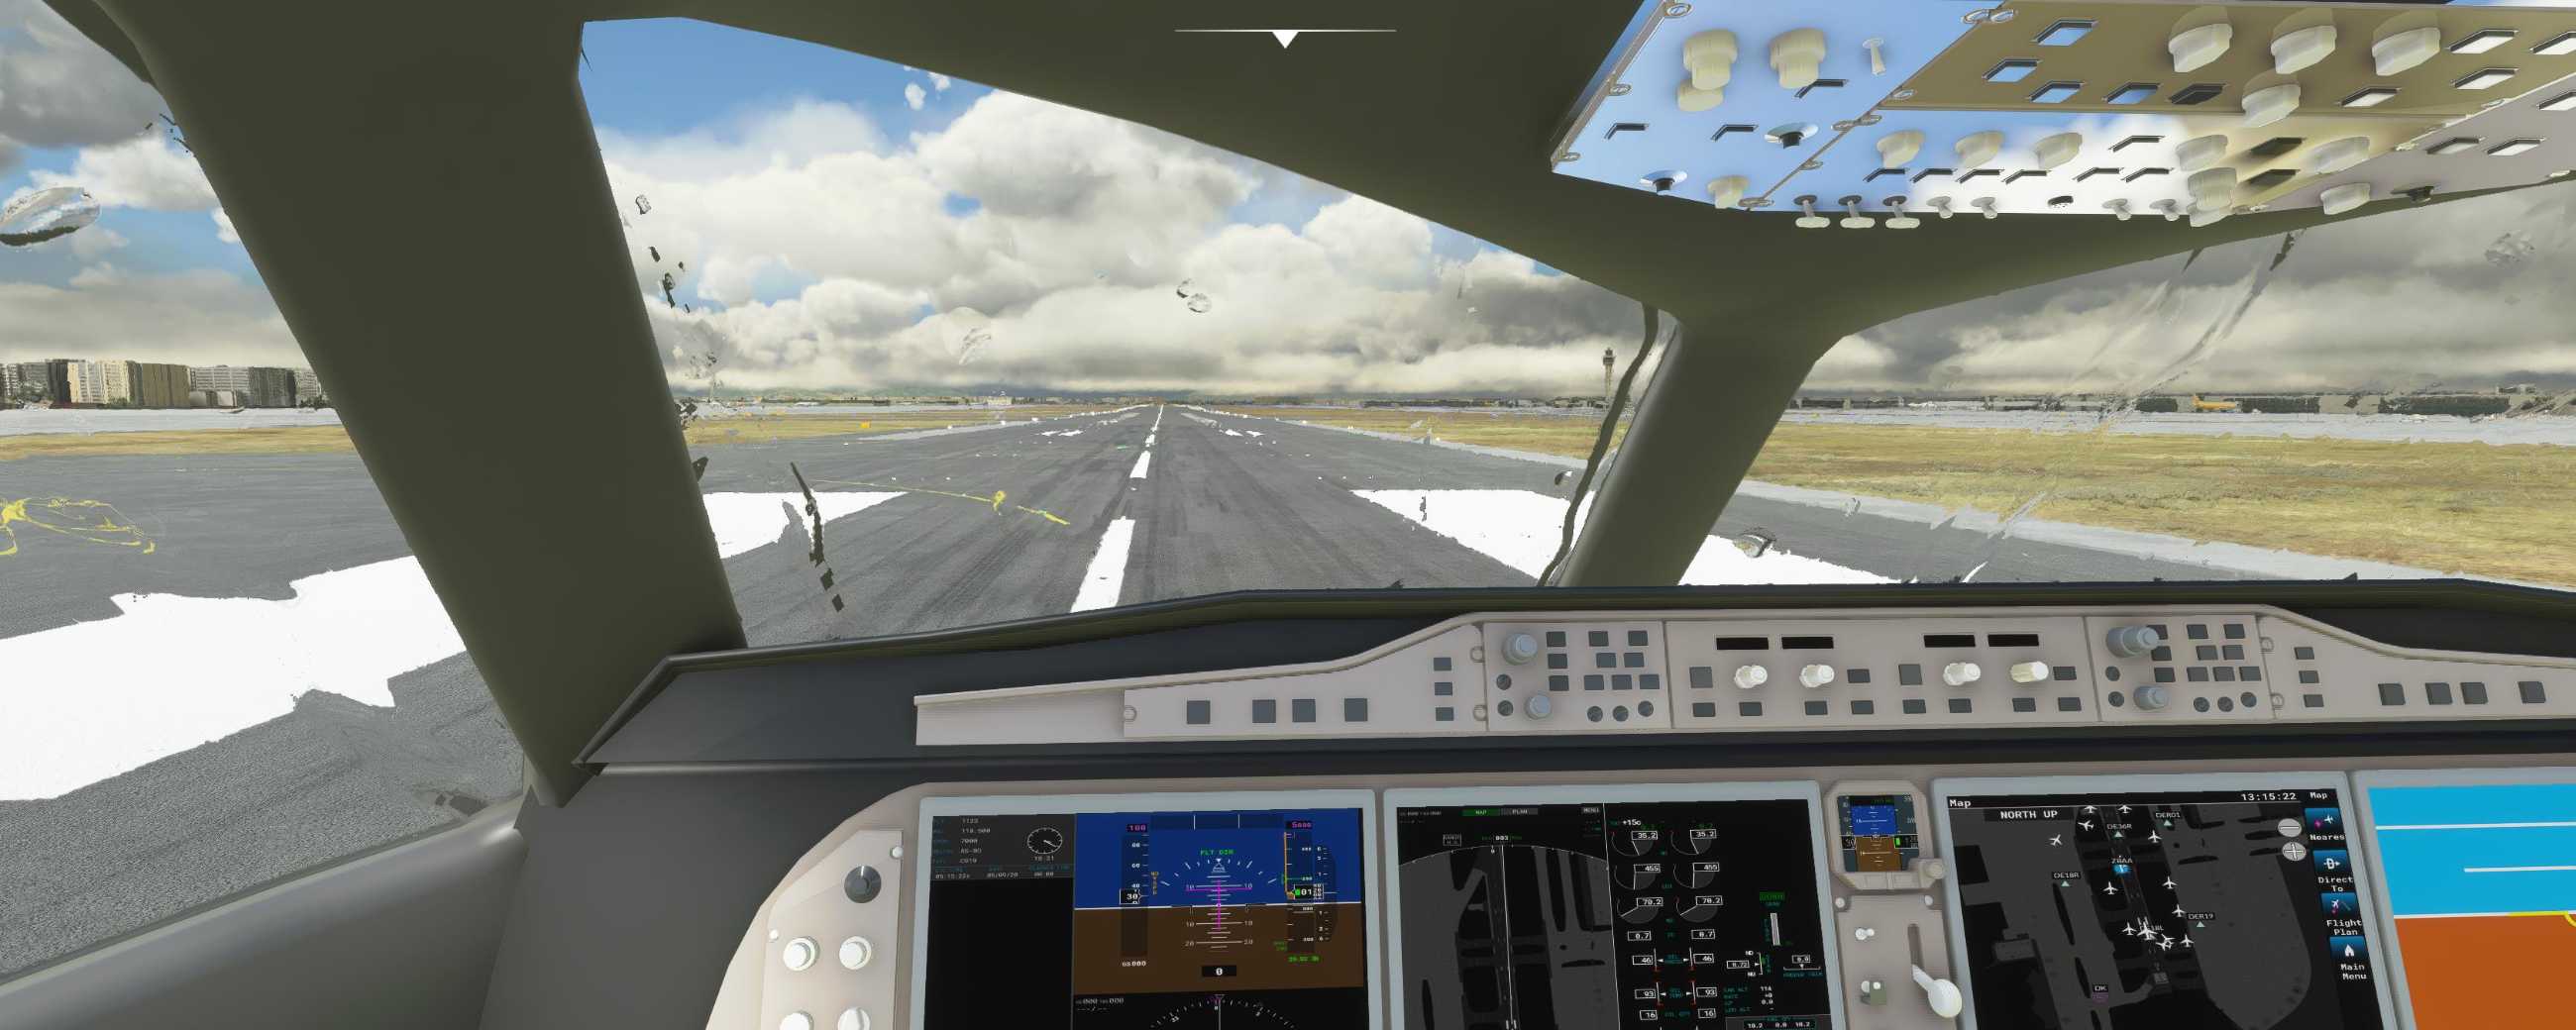 FYCYC-C919 国产大飞机机模 微软模拟飞行演示-218 